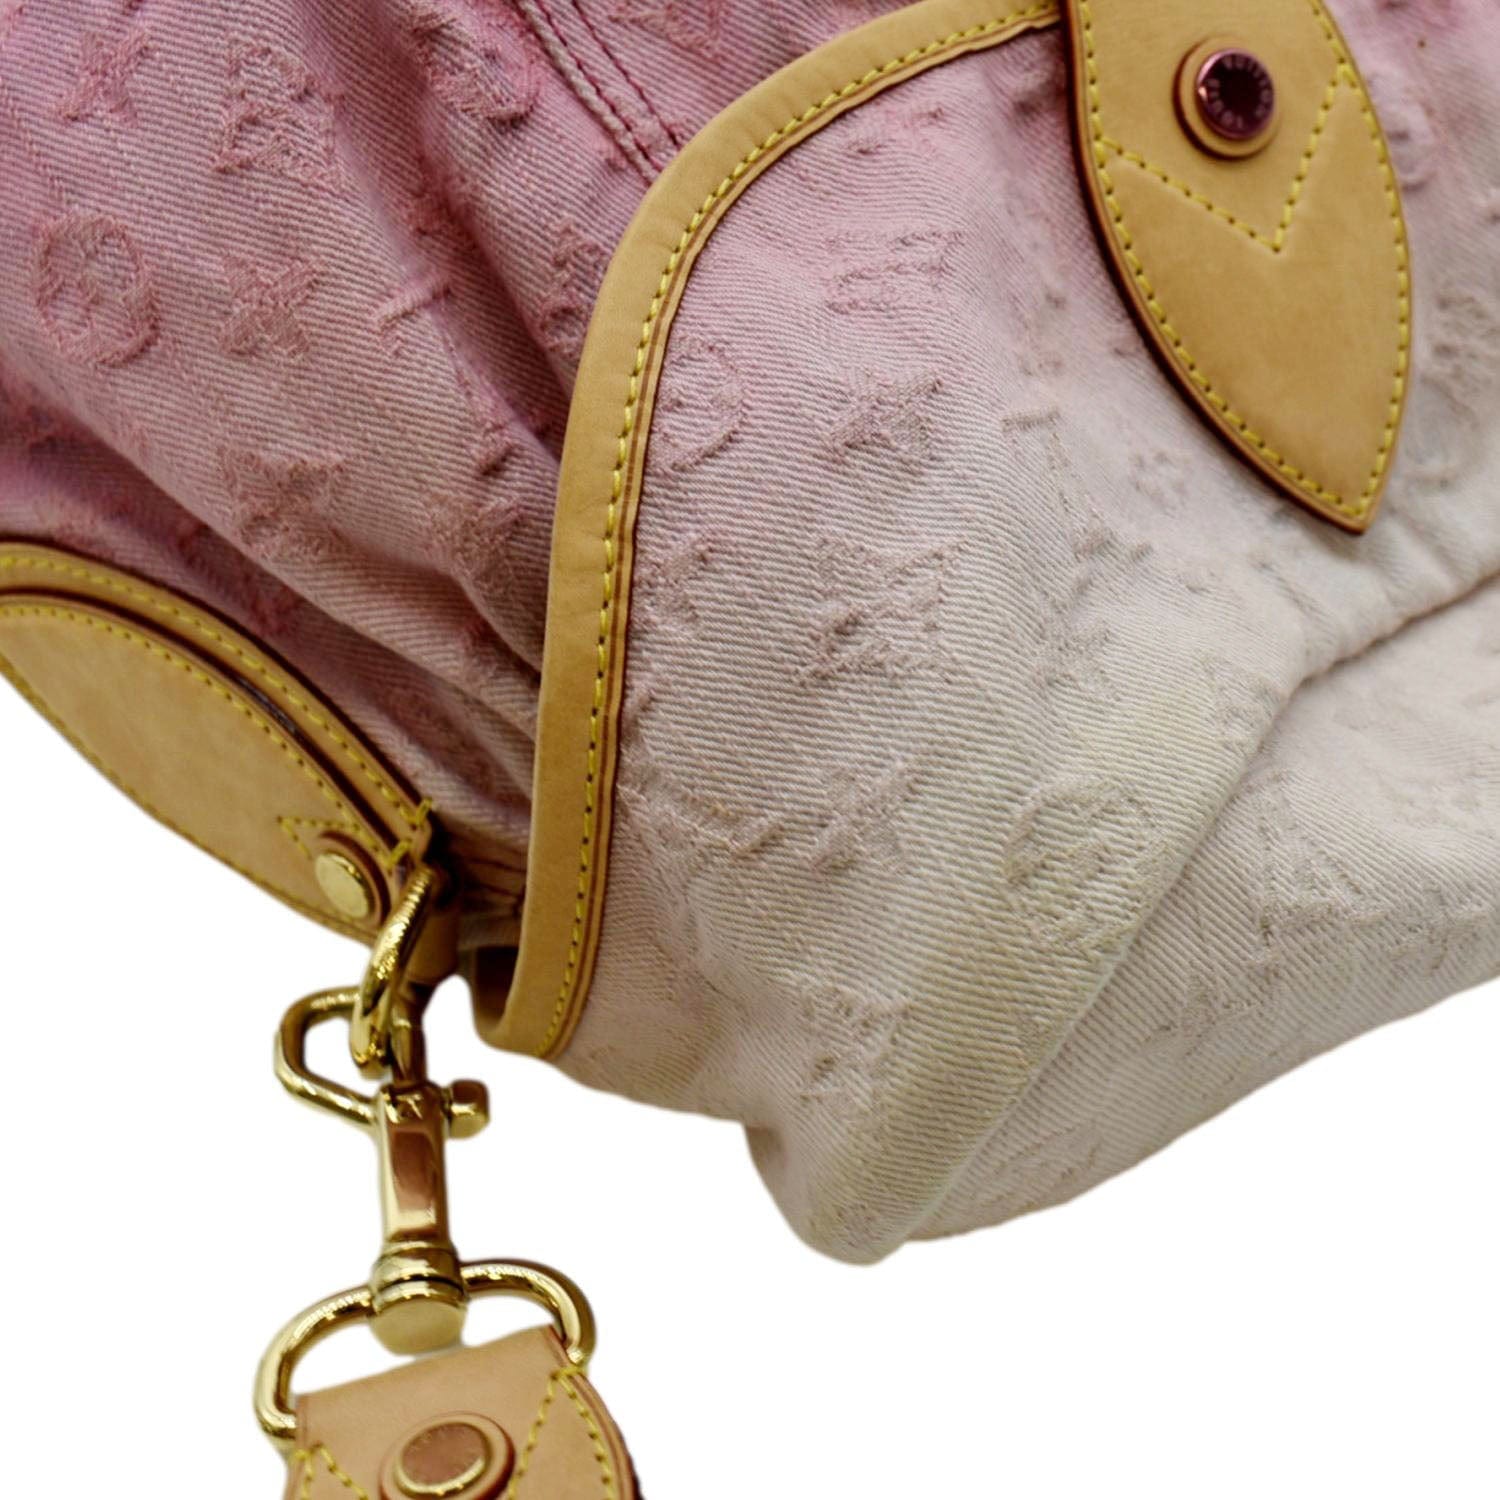 Louis Vuitton Pink Denim Bag